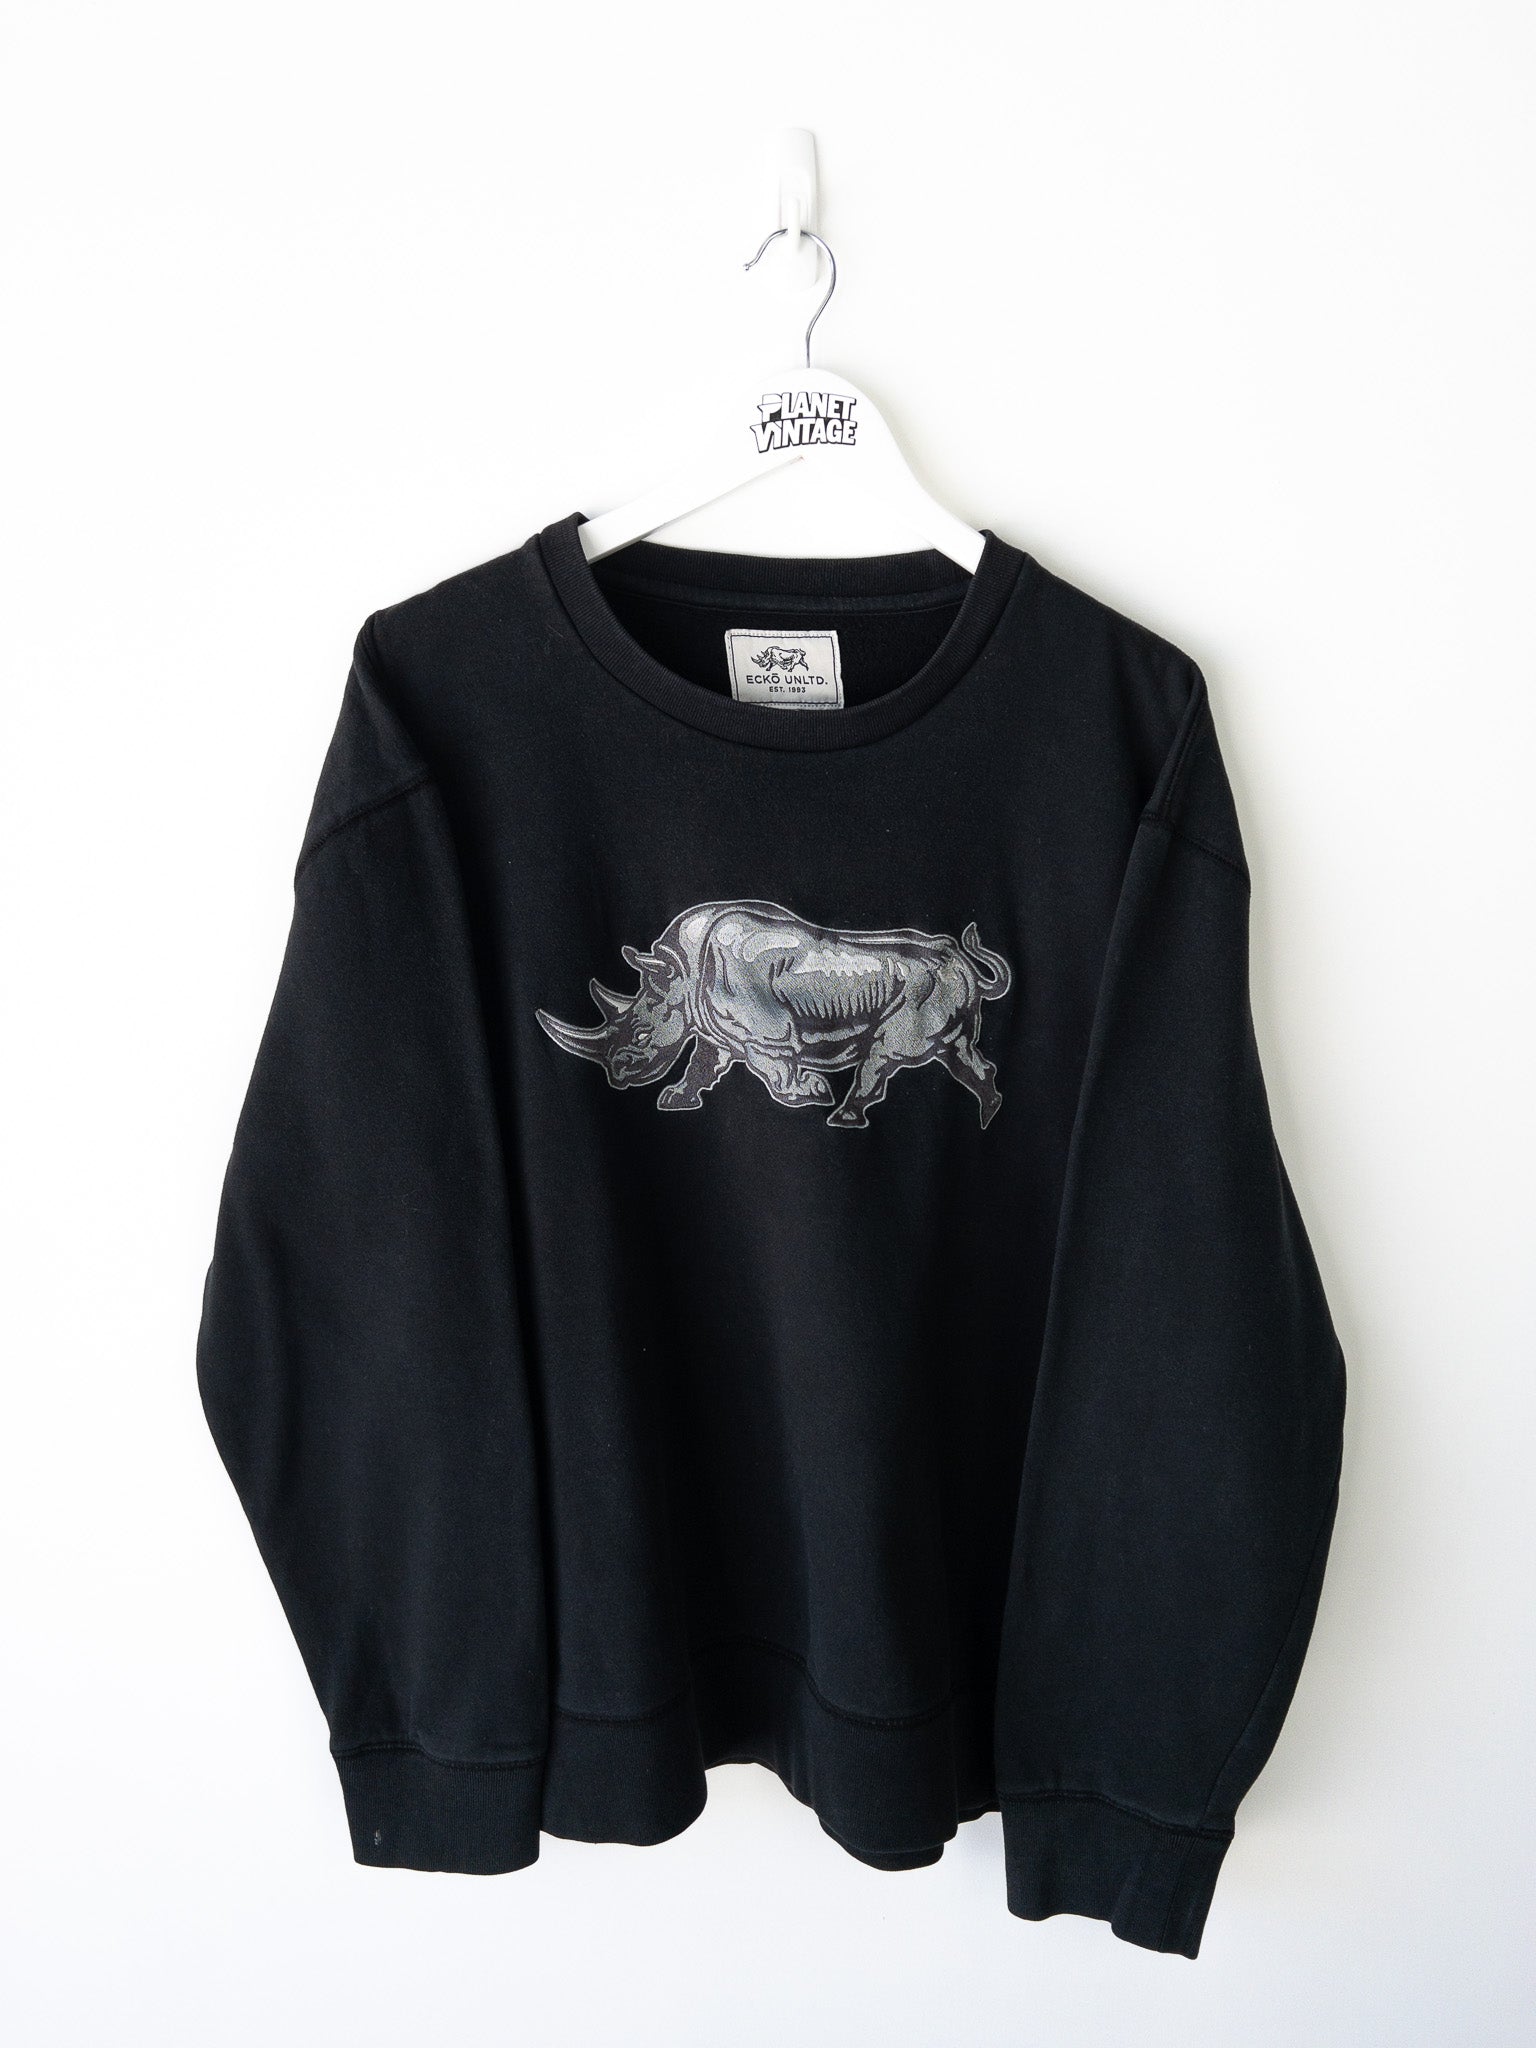 Vintage Eckō Unltd. Sweatshirt (XL)